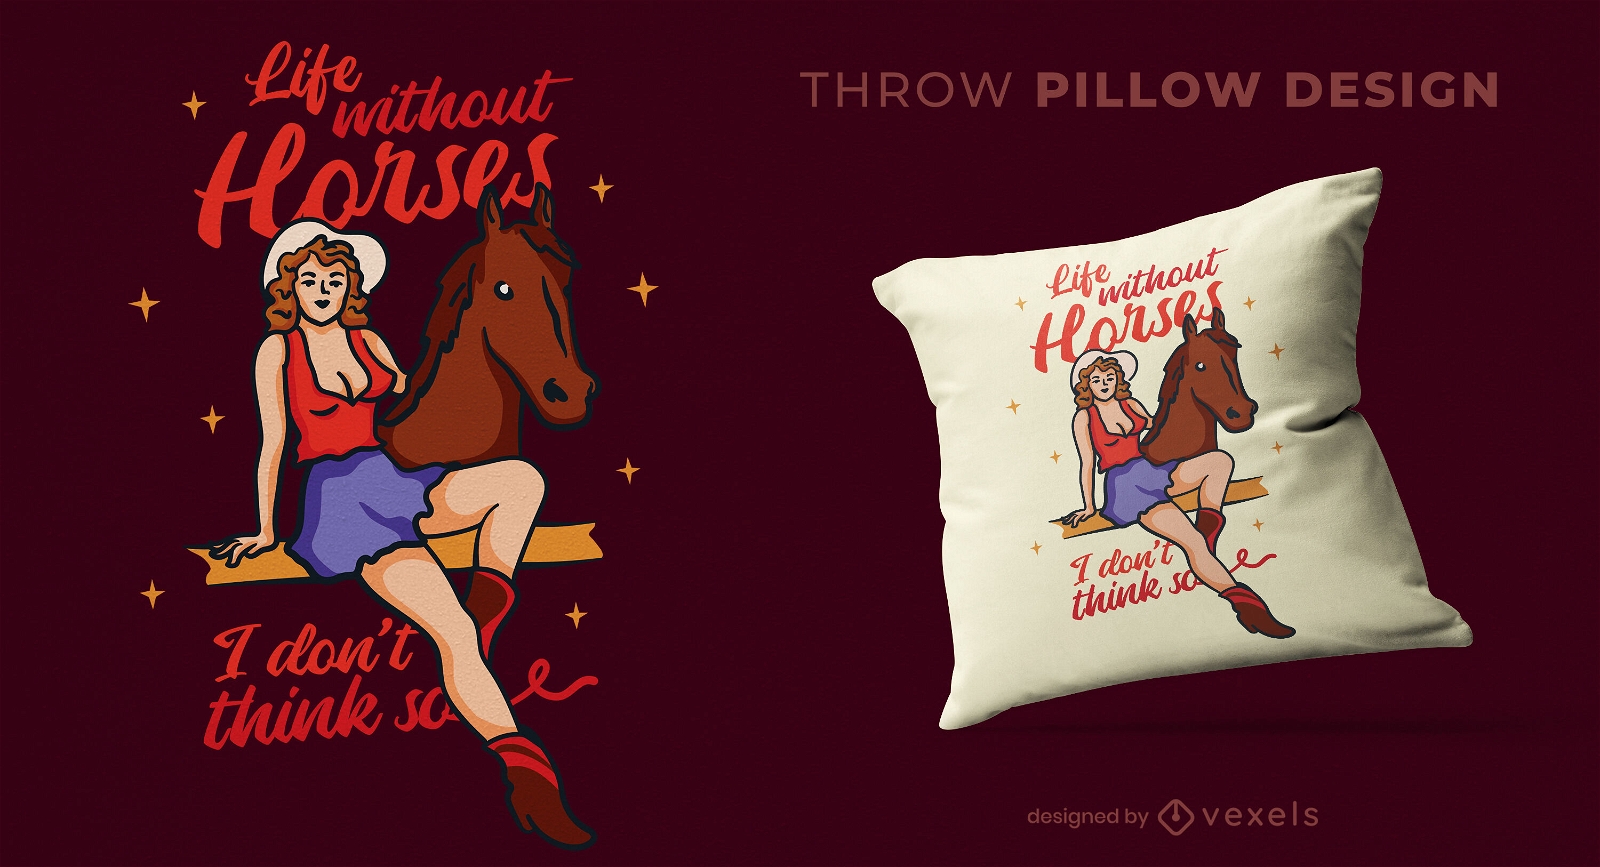 Pin up girl and horse throw pillow design